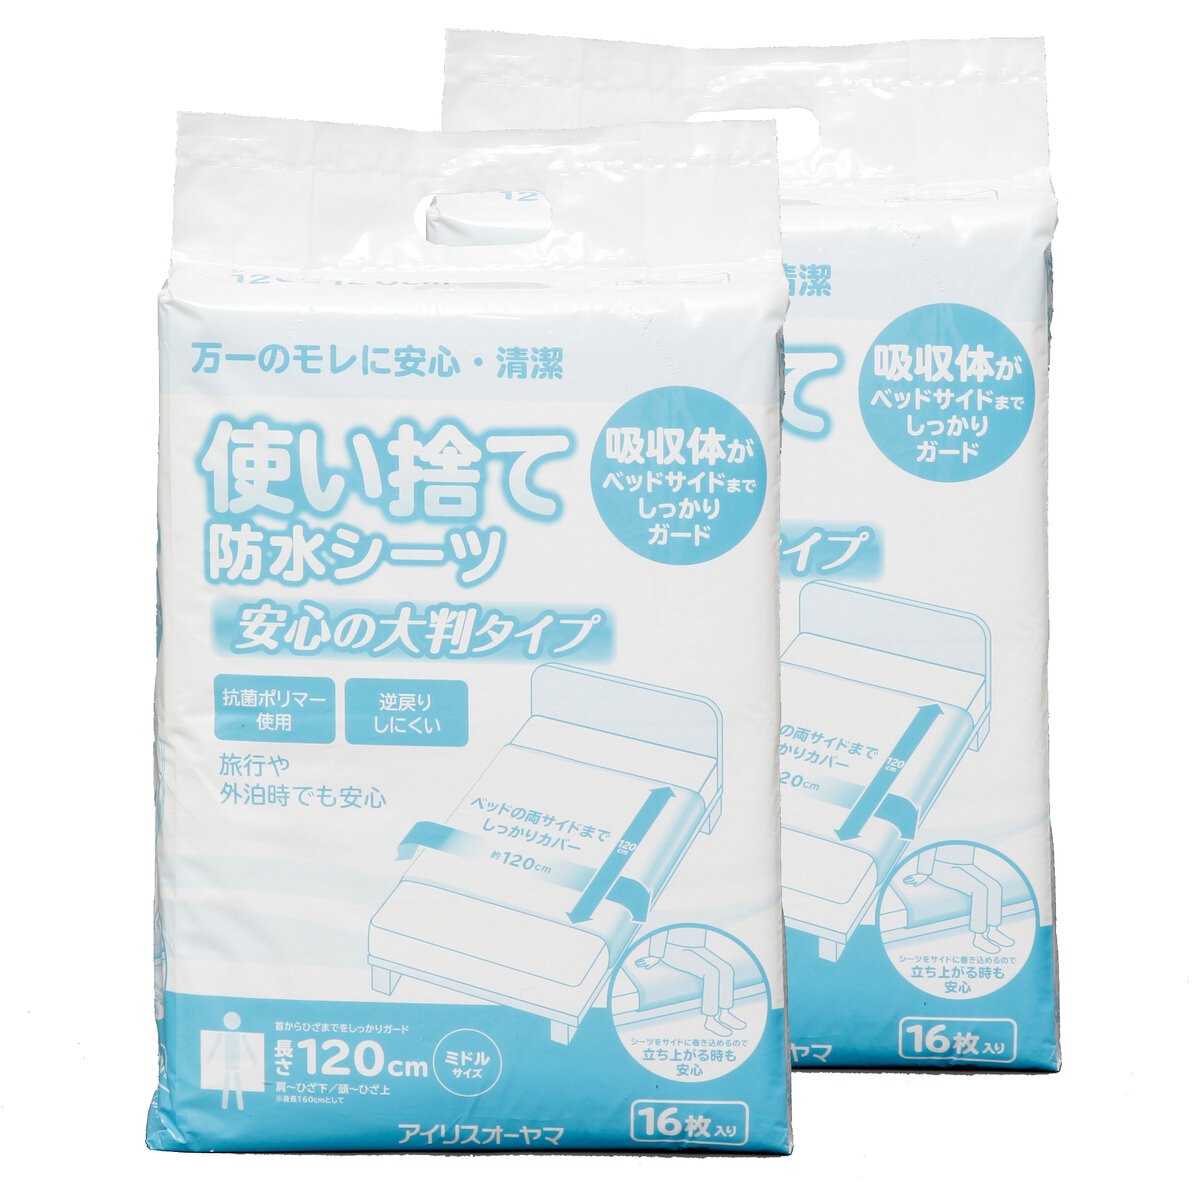 アイリスオーヤマ 使い捨て防水ベッドシーツ ミドルサイズ 32枚 (16枚 x 2袋) Costco Japan